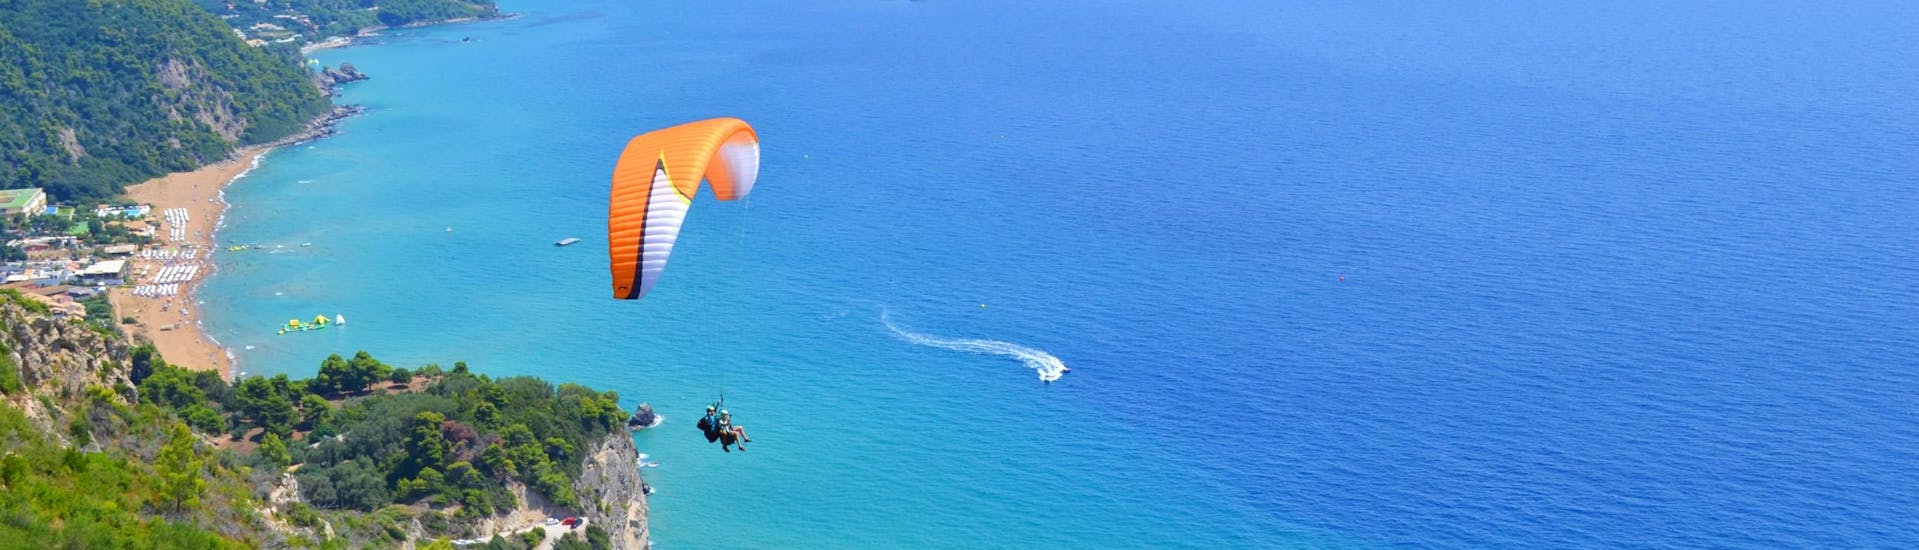 Vol en parapente panoramique à Pelekas - Kontogialos Beach.